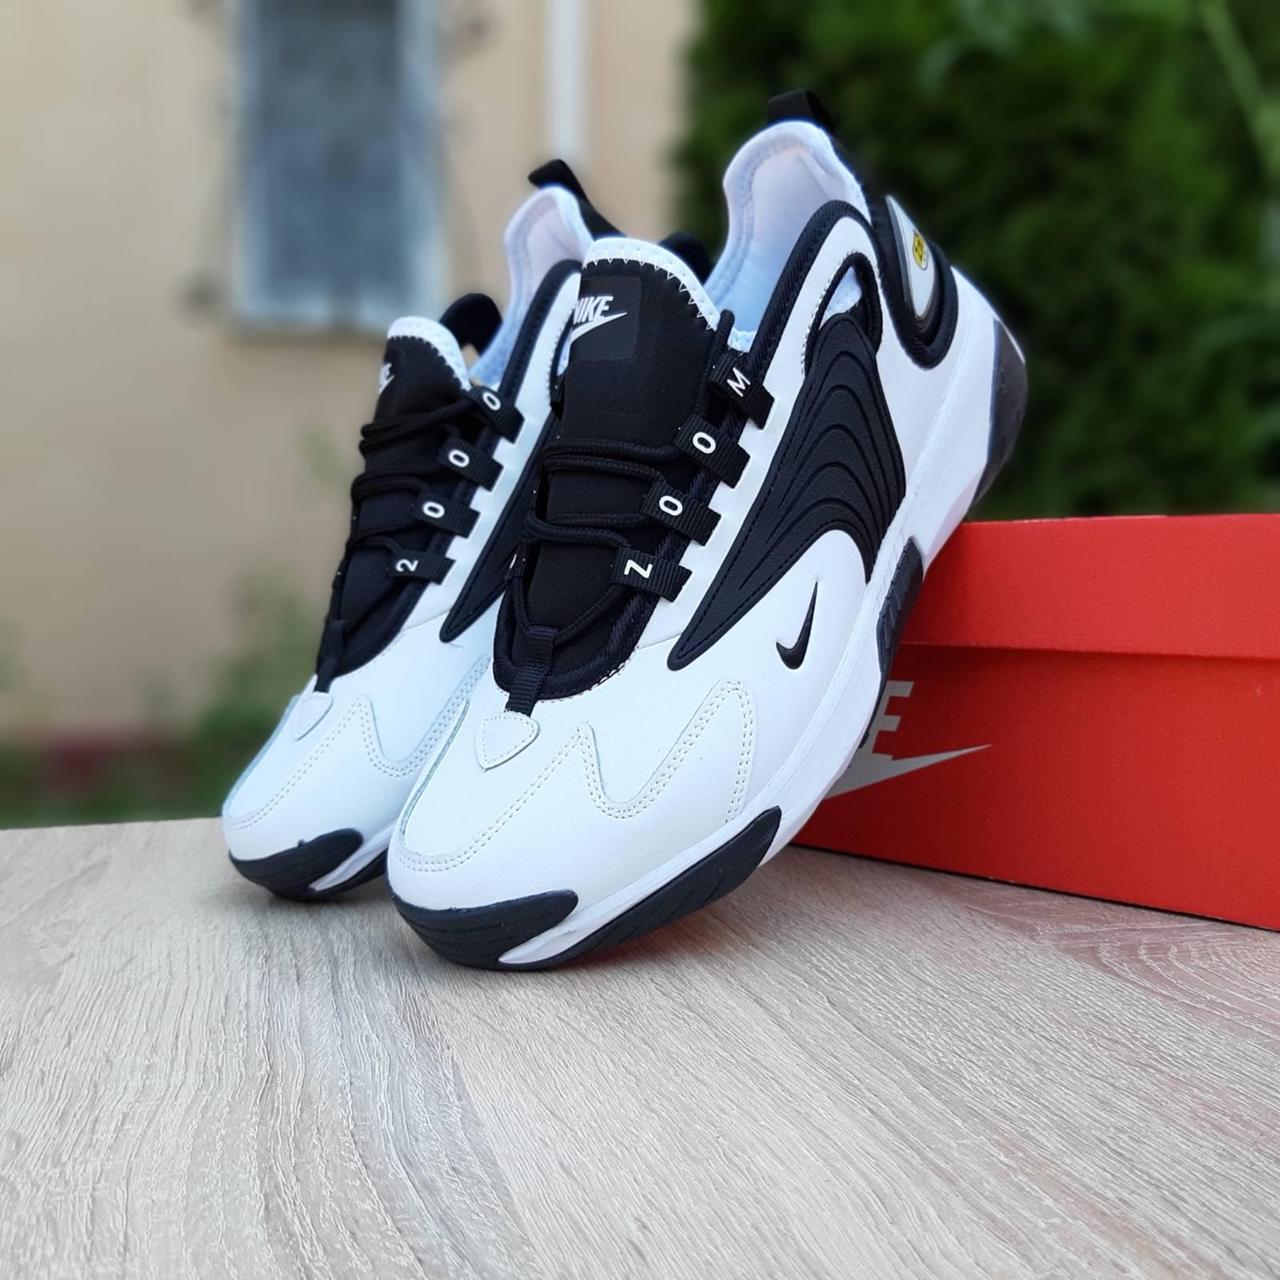 

Мужские кроссовки в стиле Nike Zoom 2K, кожа, белые с черным 46 (29,5 см), размеры:45,46